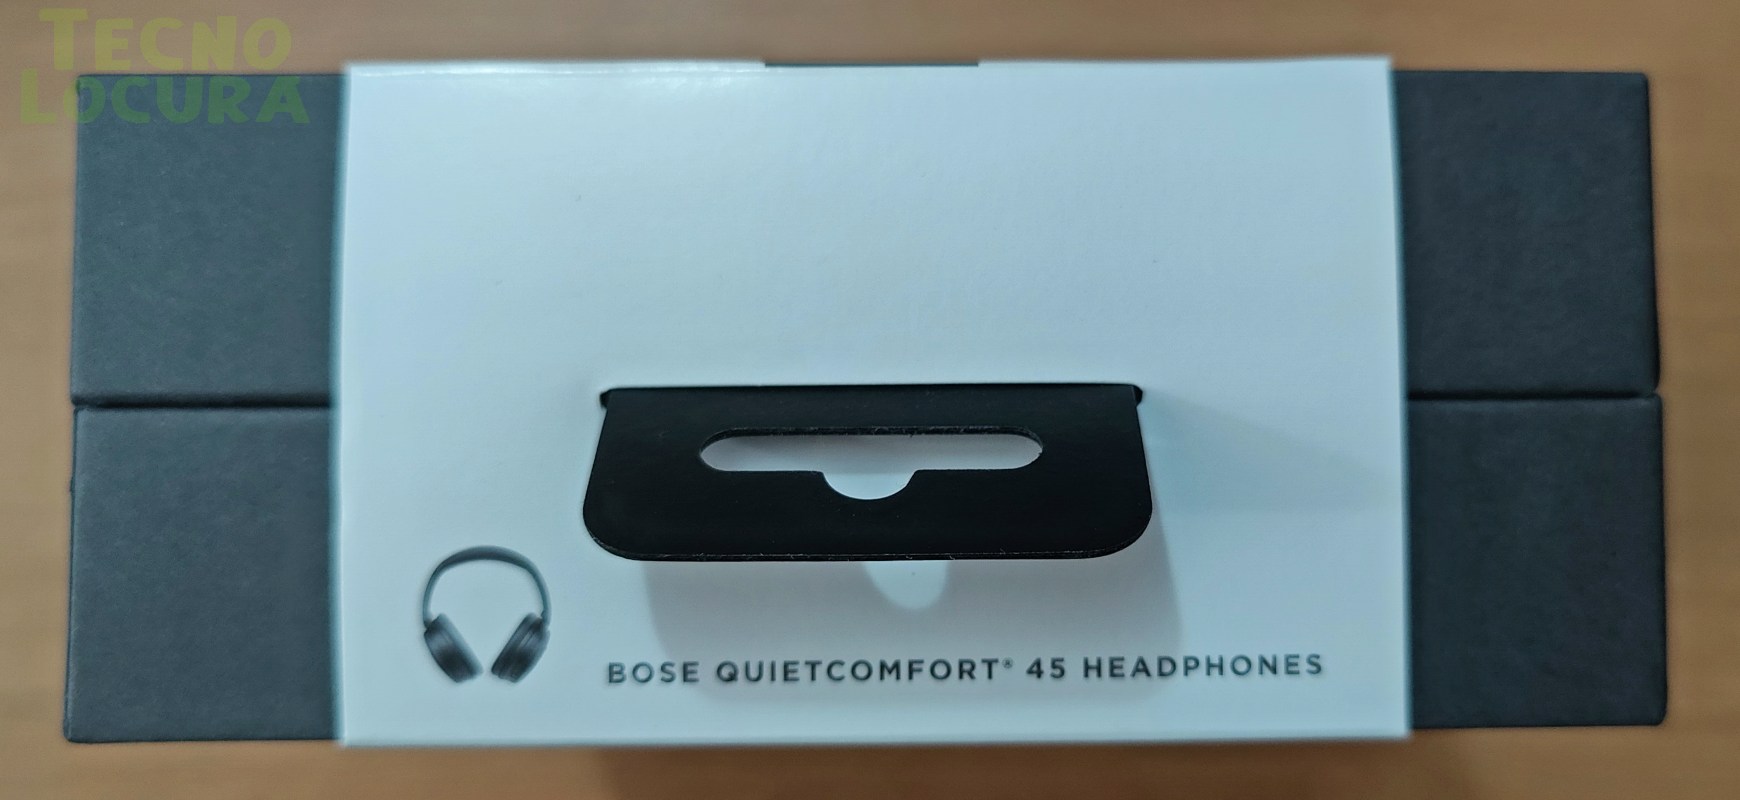 Bose QuietComfort 45